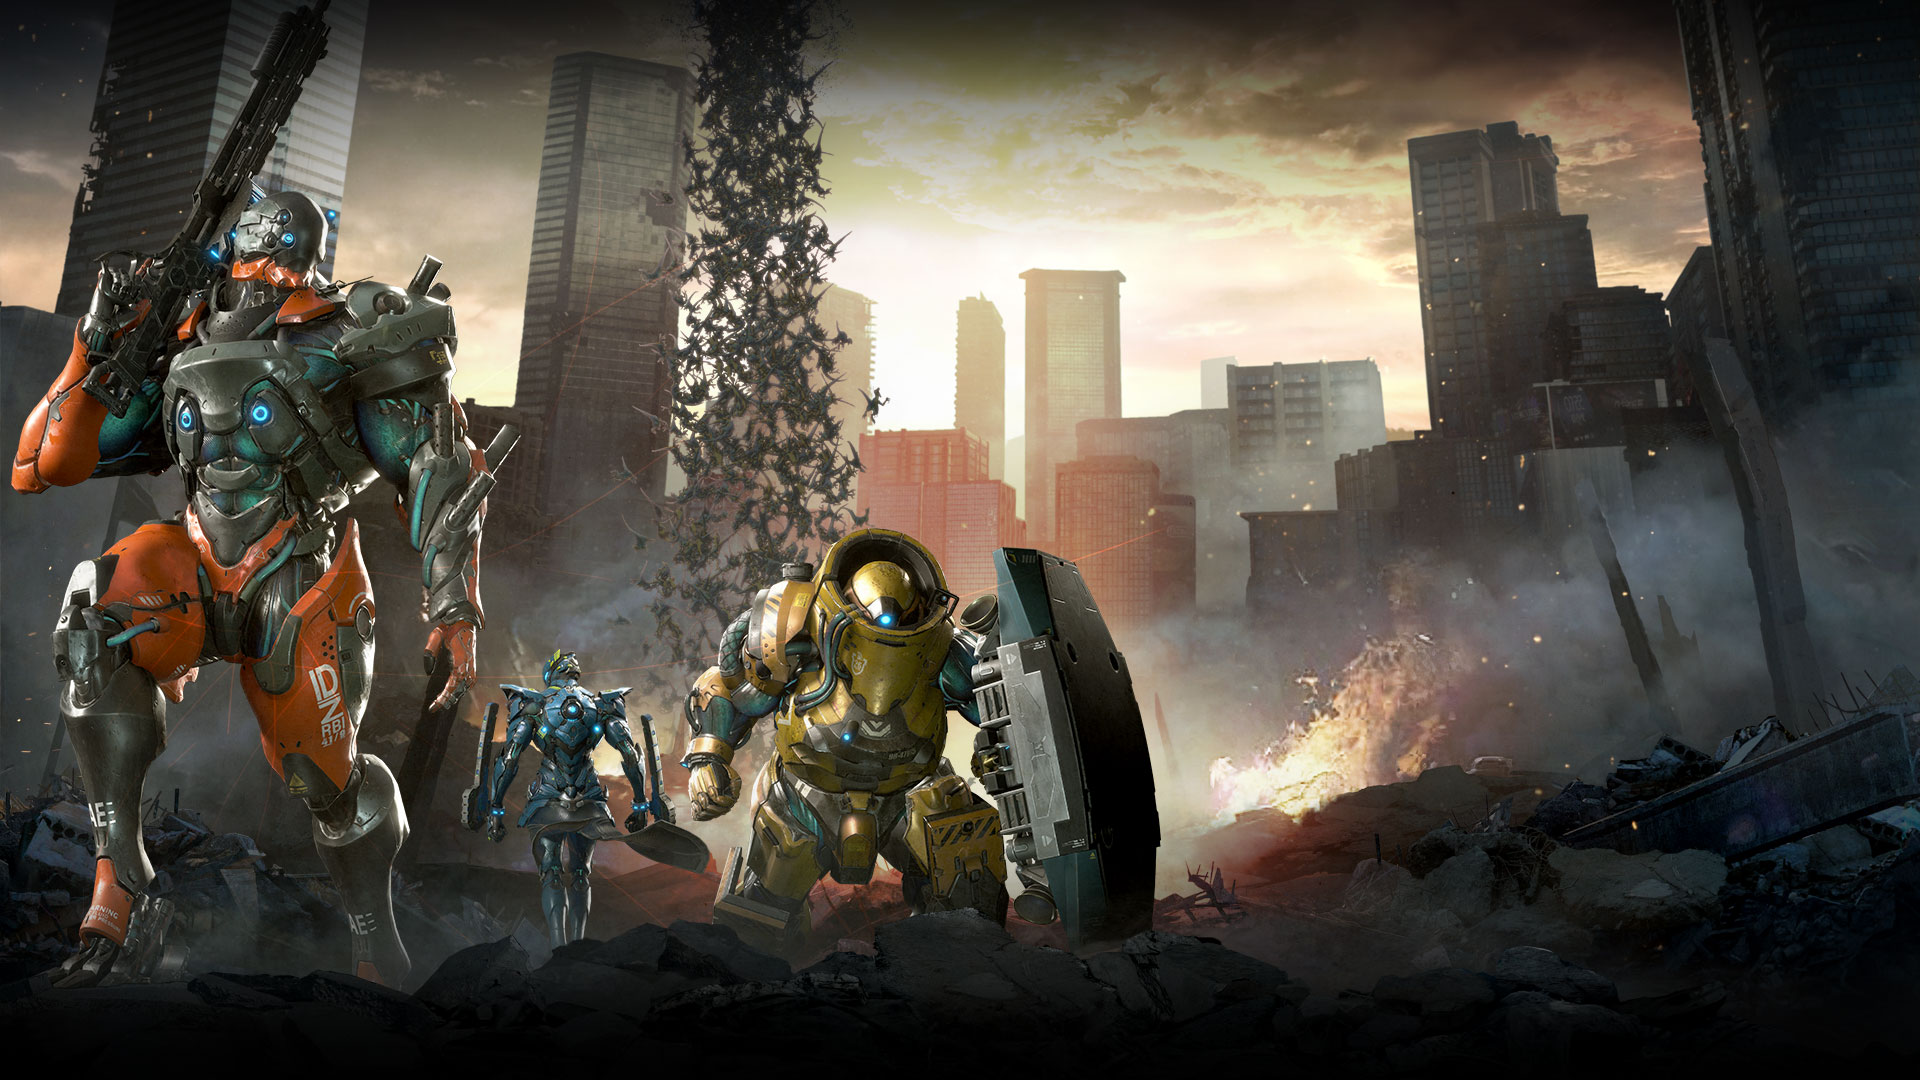 Três trajes mecanizados estão entre os escombros urbanos, dinossauros caem do céu.